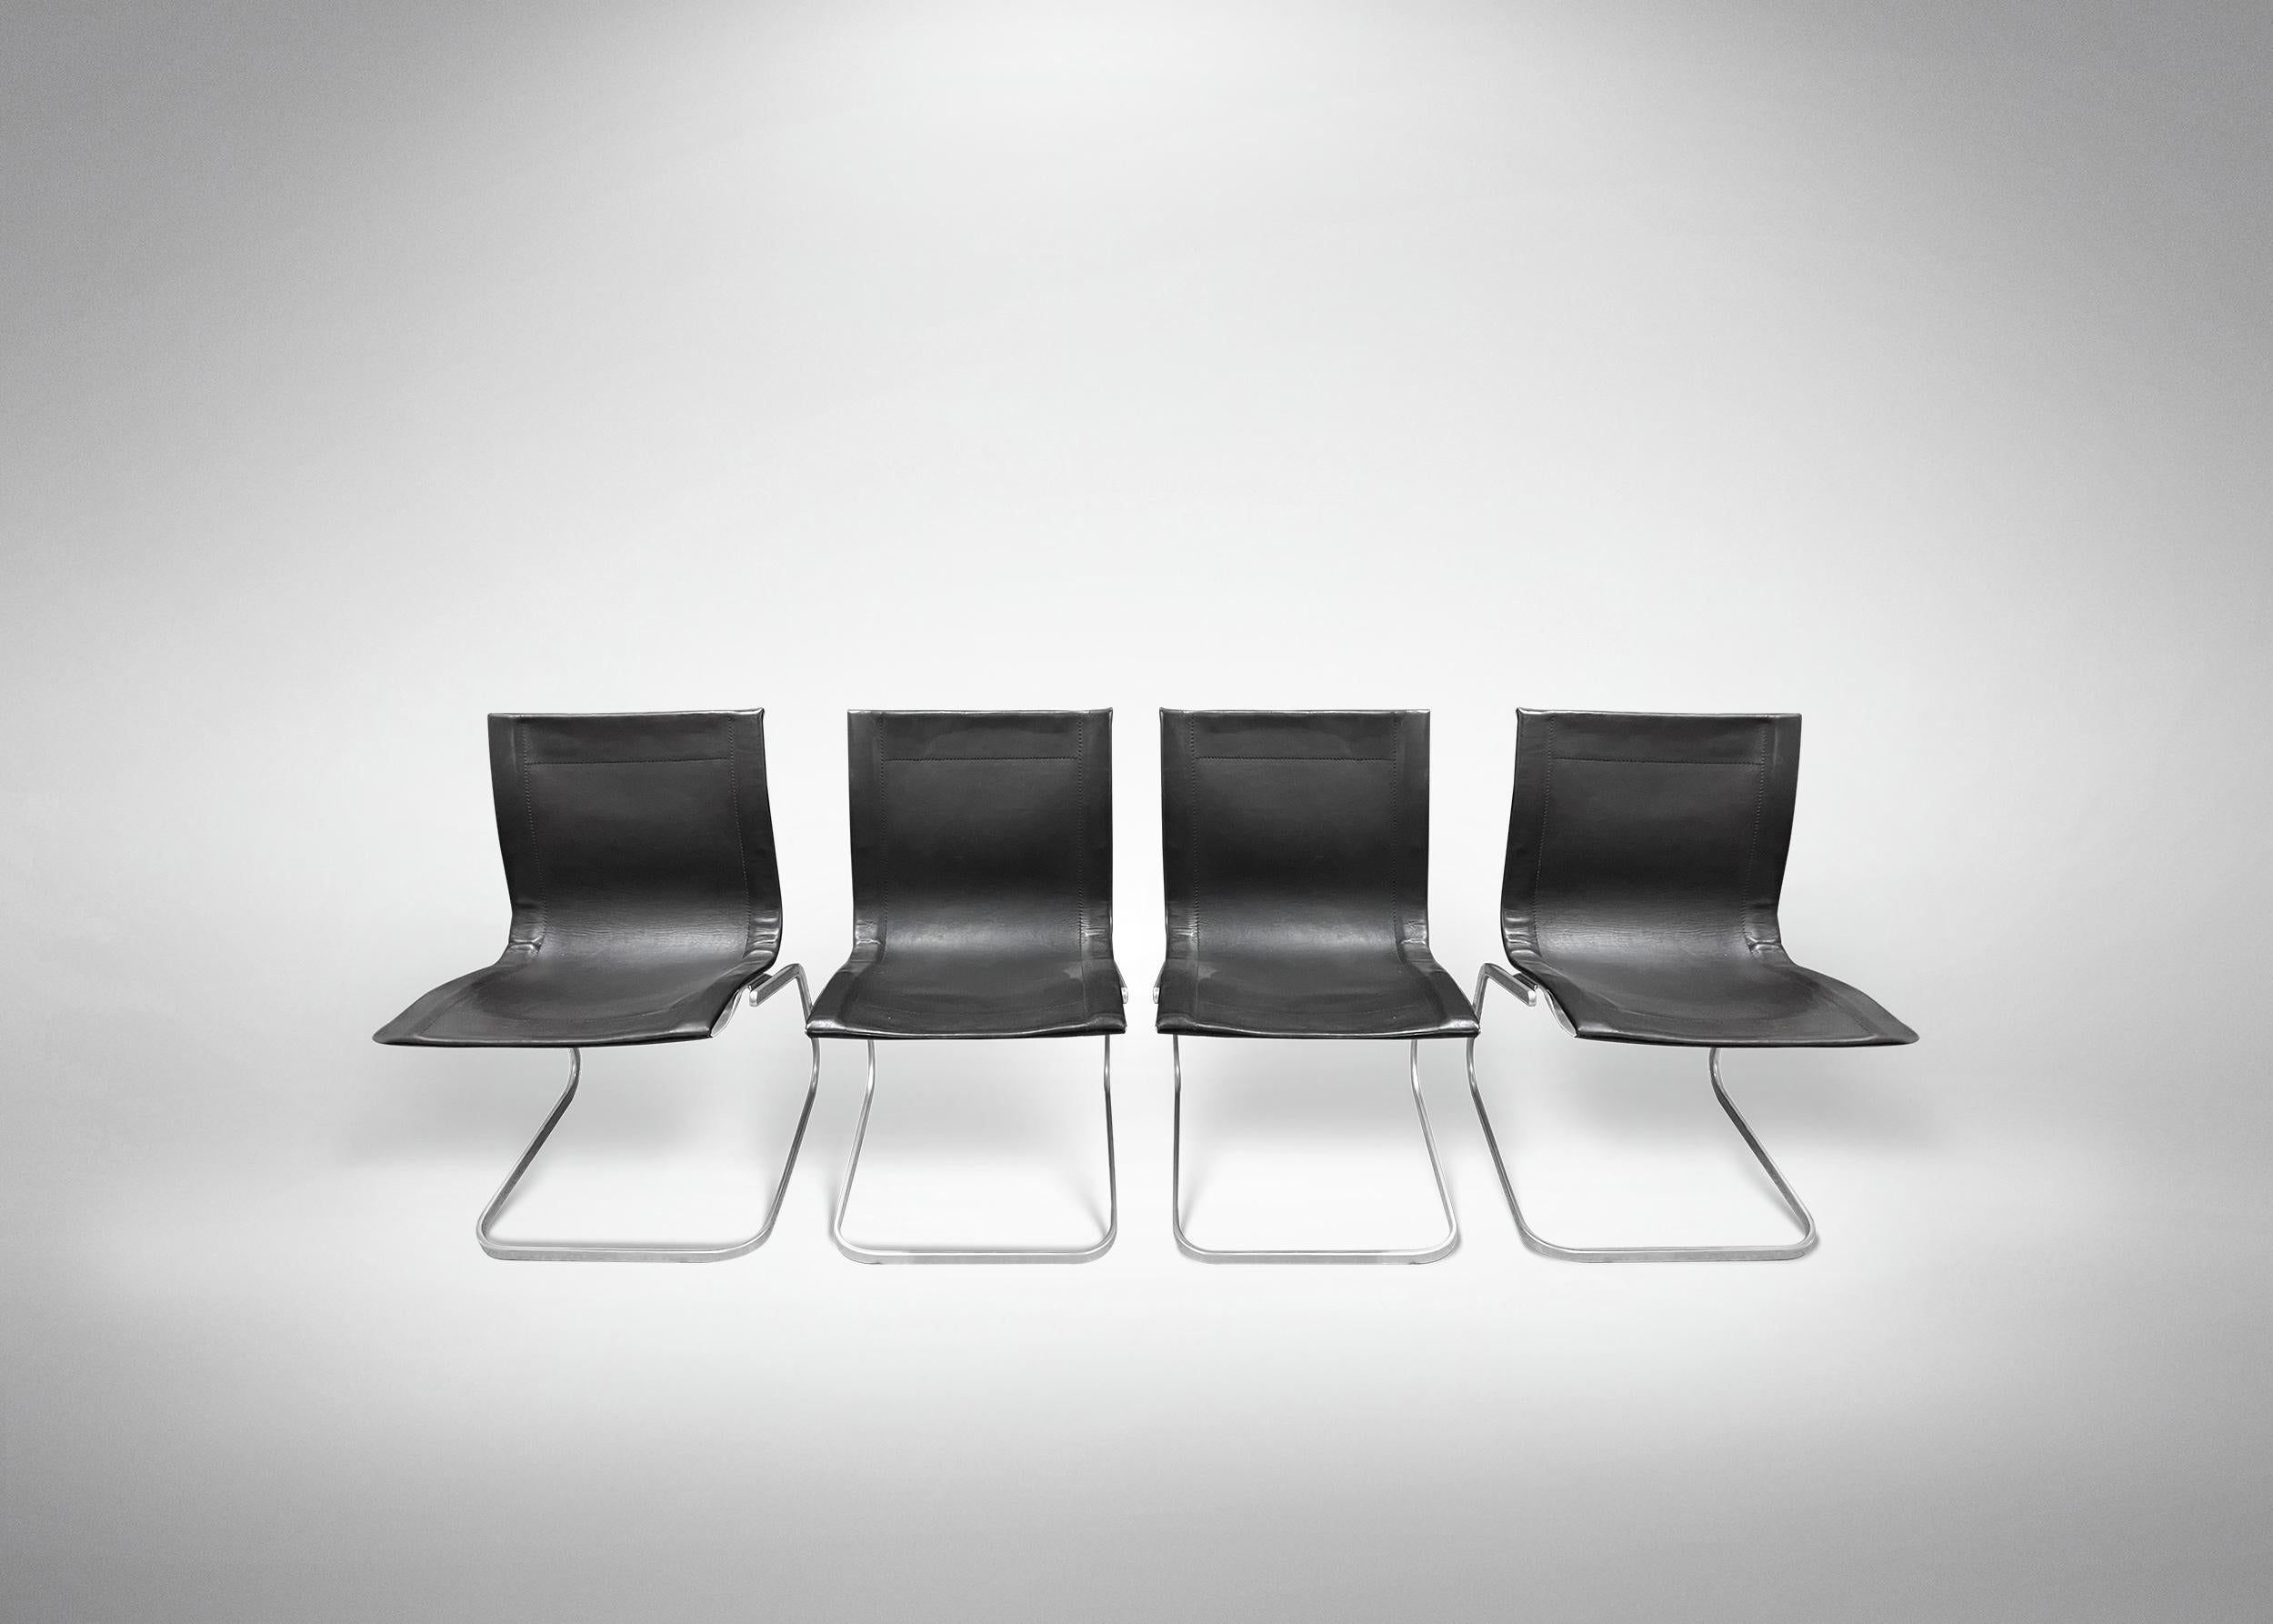 Quatre chaises avec structure métallique et revêtement en cuir, modèle 'Lia', conçues par Claudio Salocchi.

Marque d'origine. Légers défauts. Prod. Sormani, Italie, vers 1960.

81x 49 x 53 cm.

Bonnes conditions. 